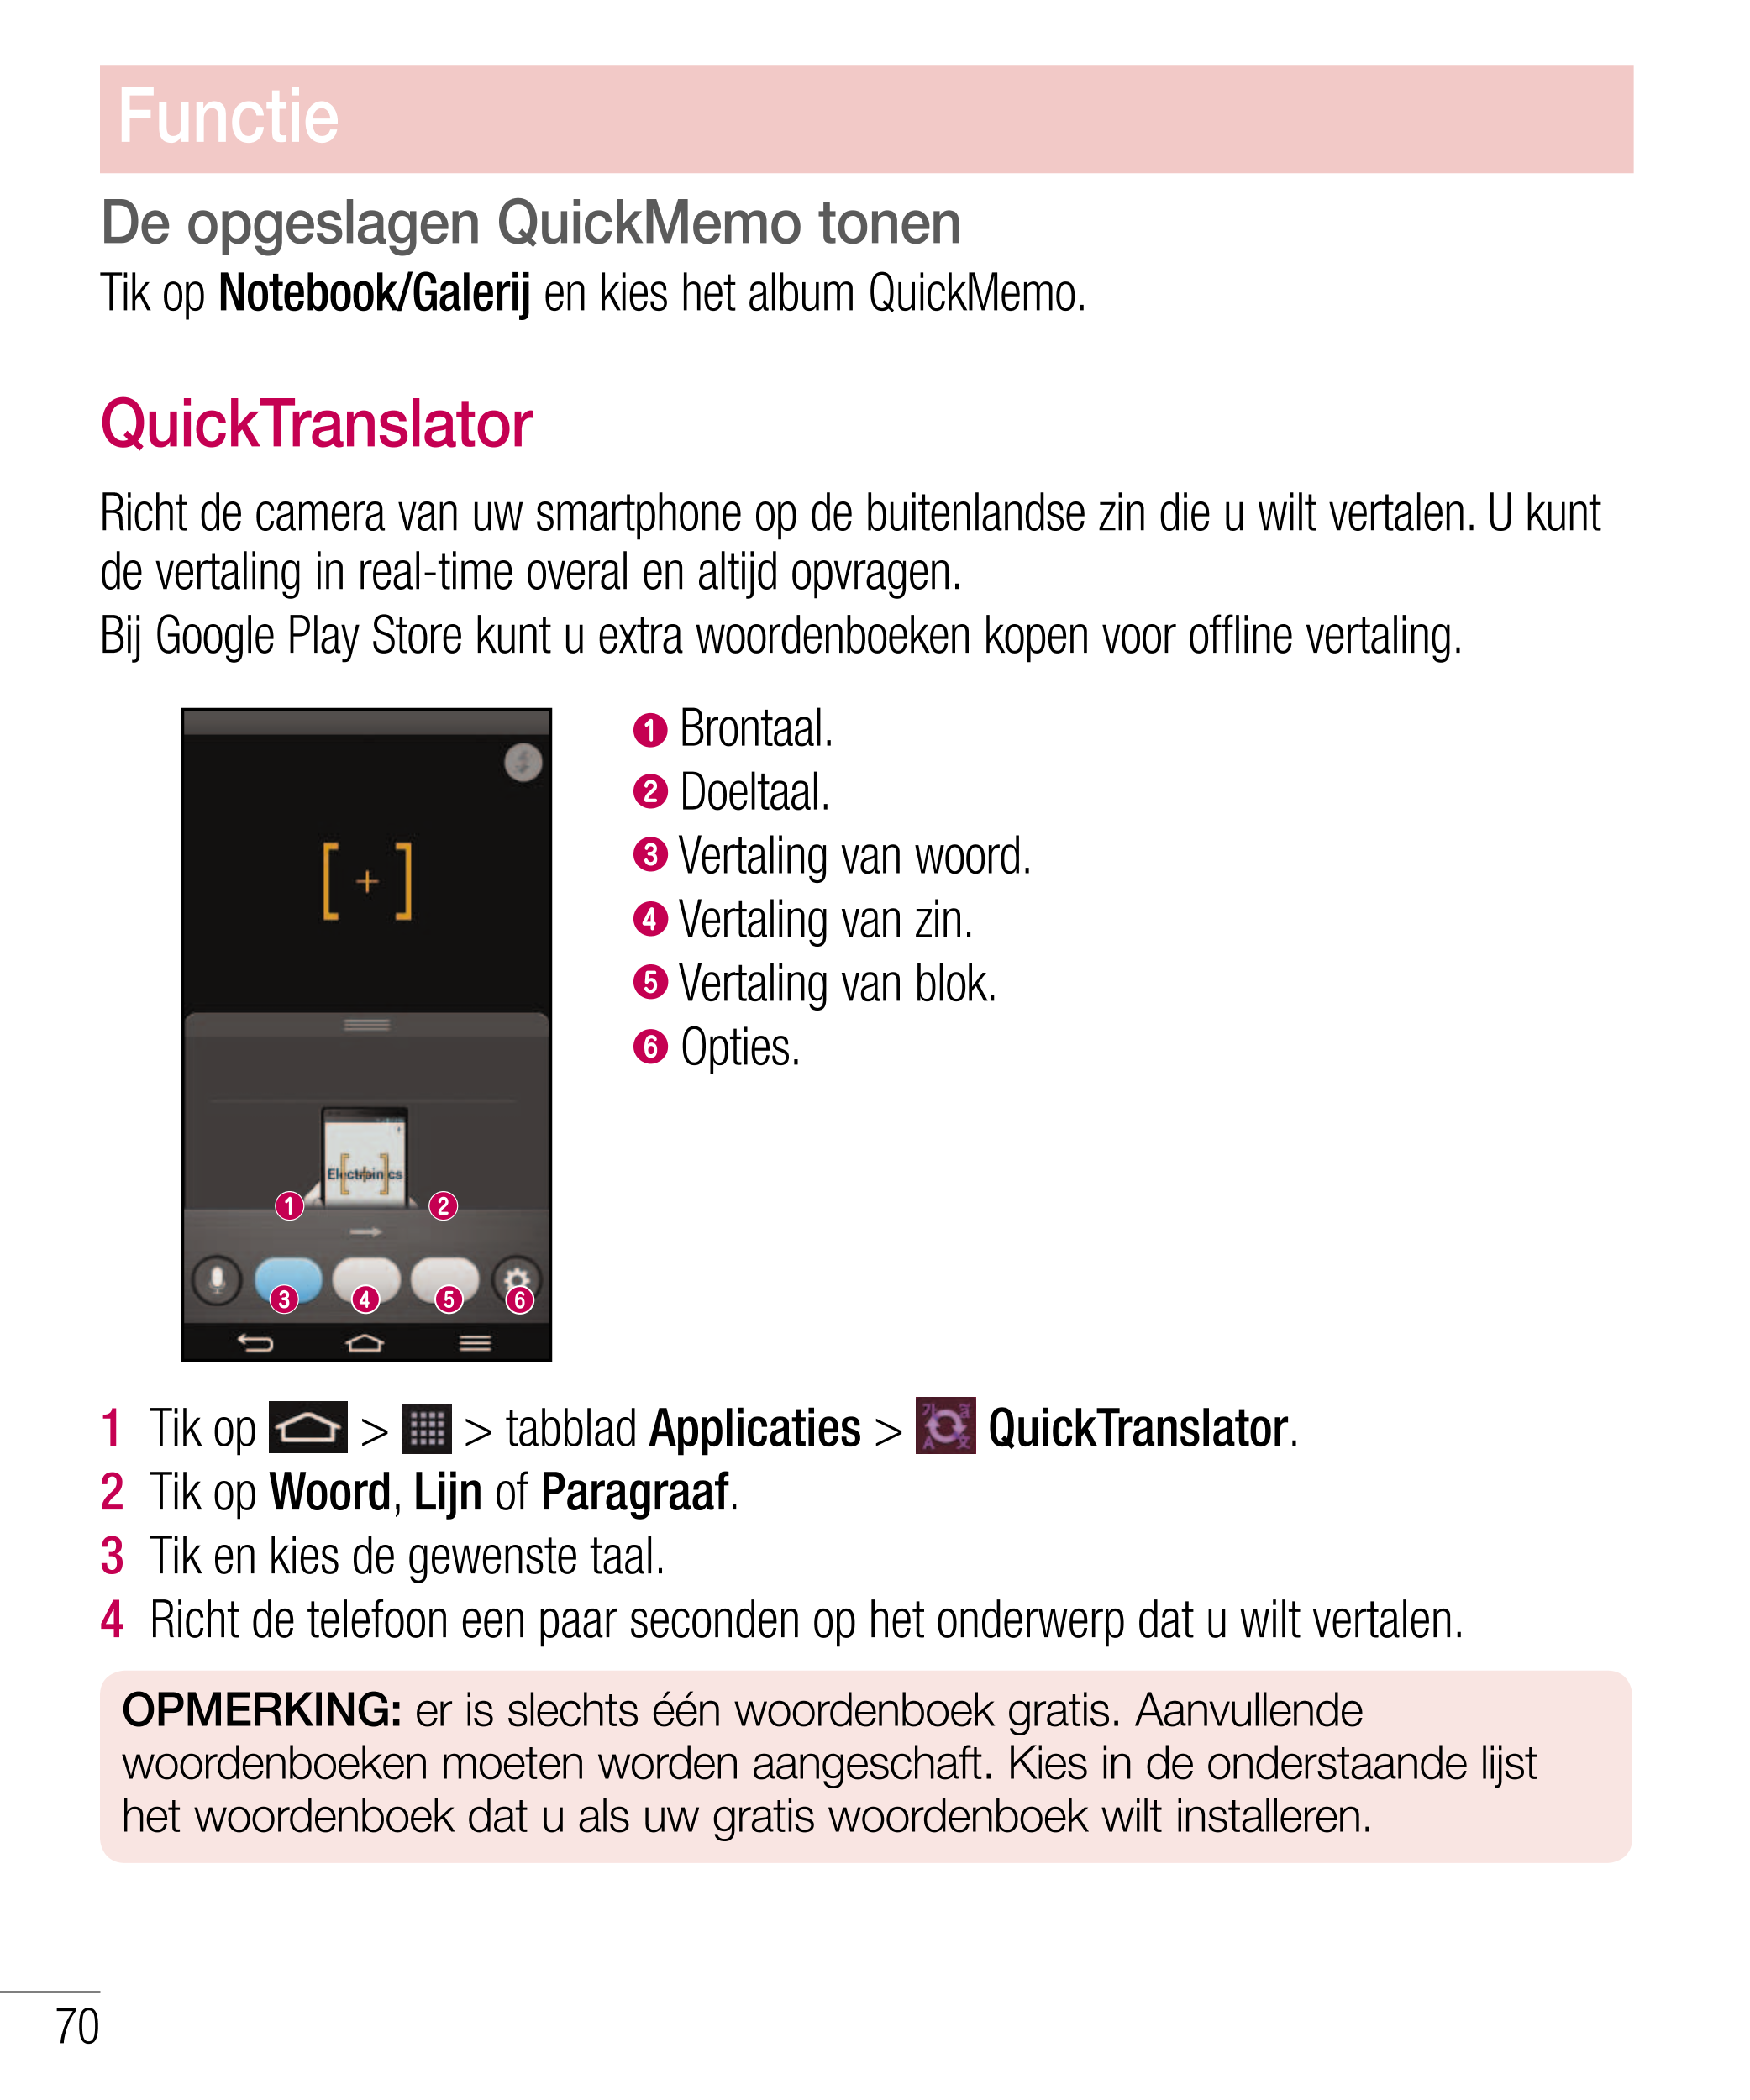 Functie
De opgeslagen QuickMemo tonen 
Tik op  Notebook/Galerij  en kies het album QuickMemo.
QuickTranslator
Richt de camera va